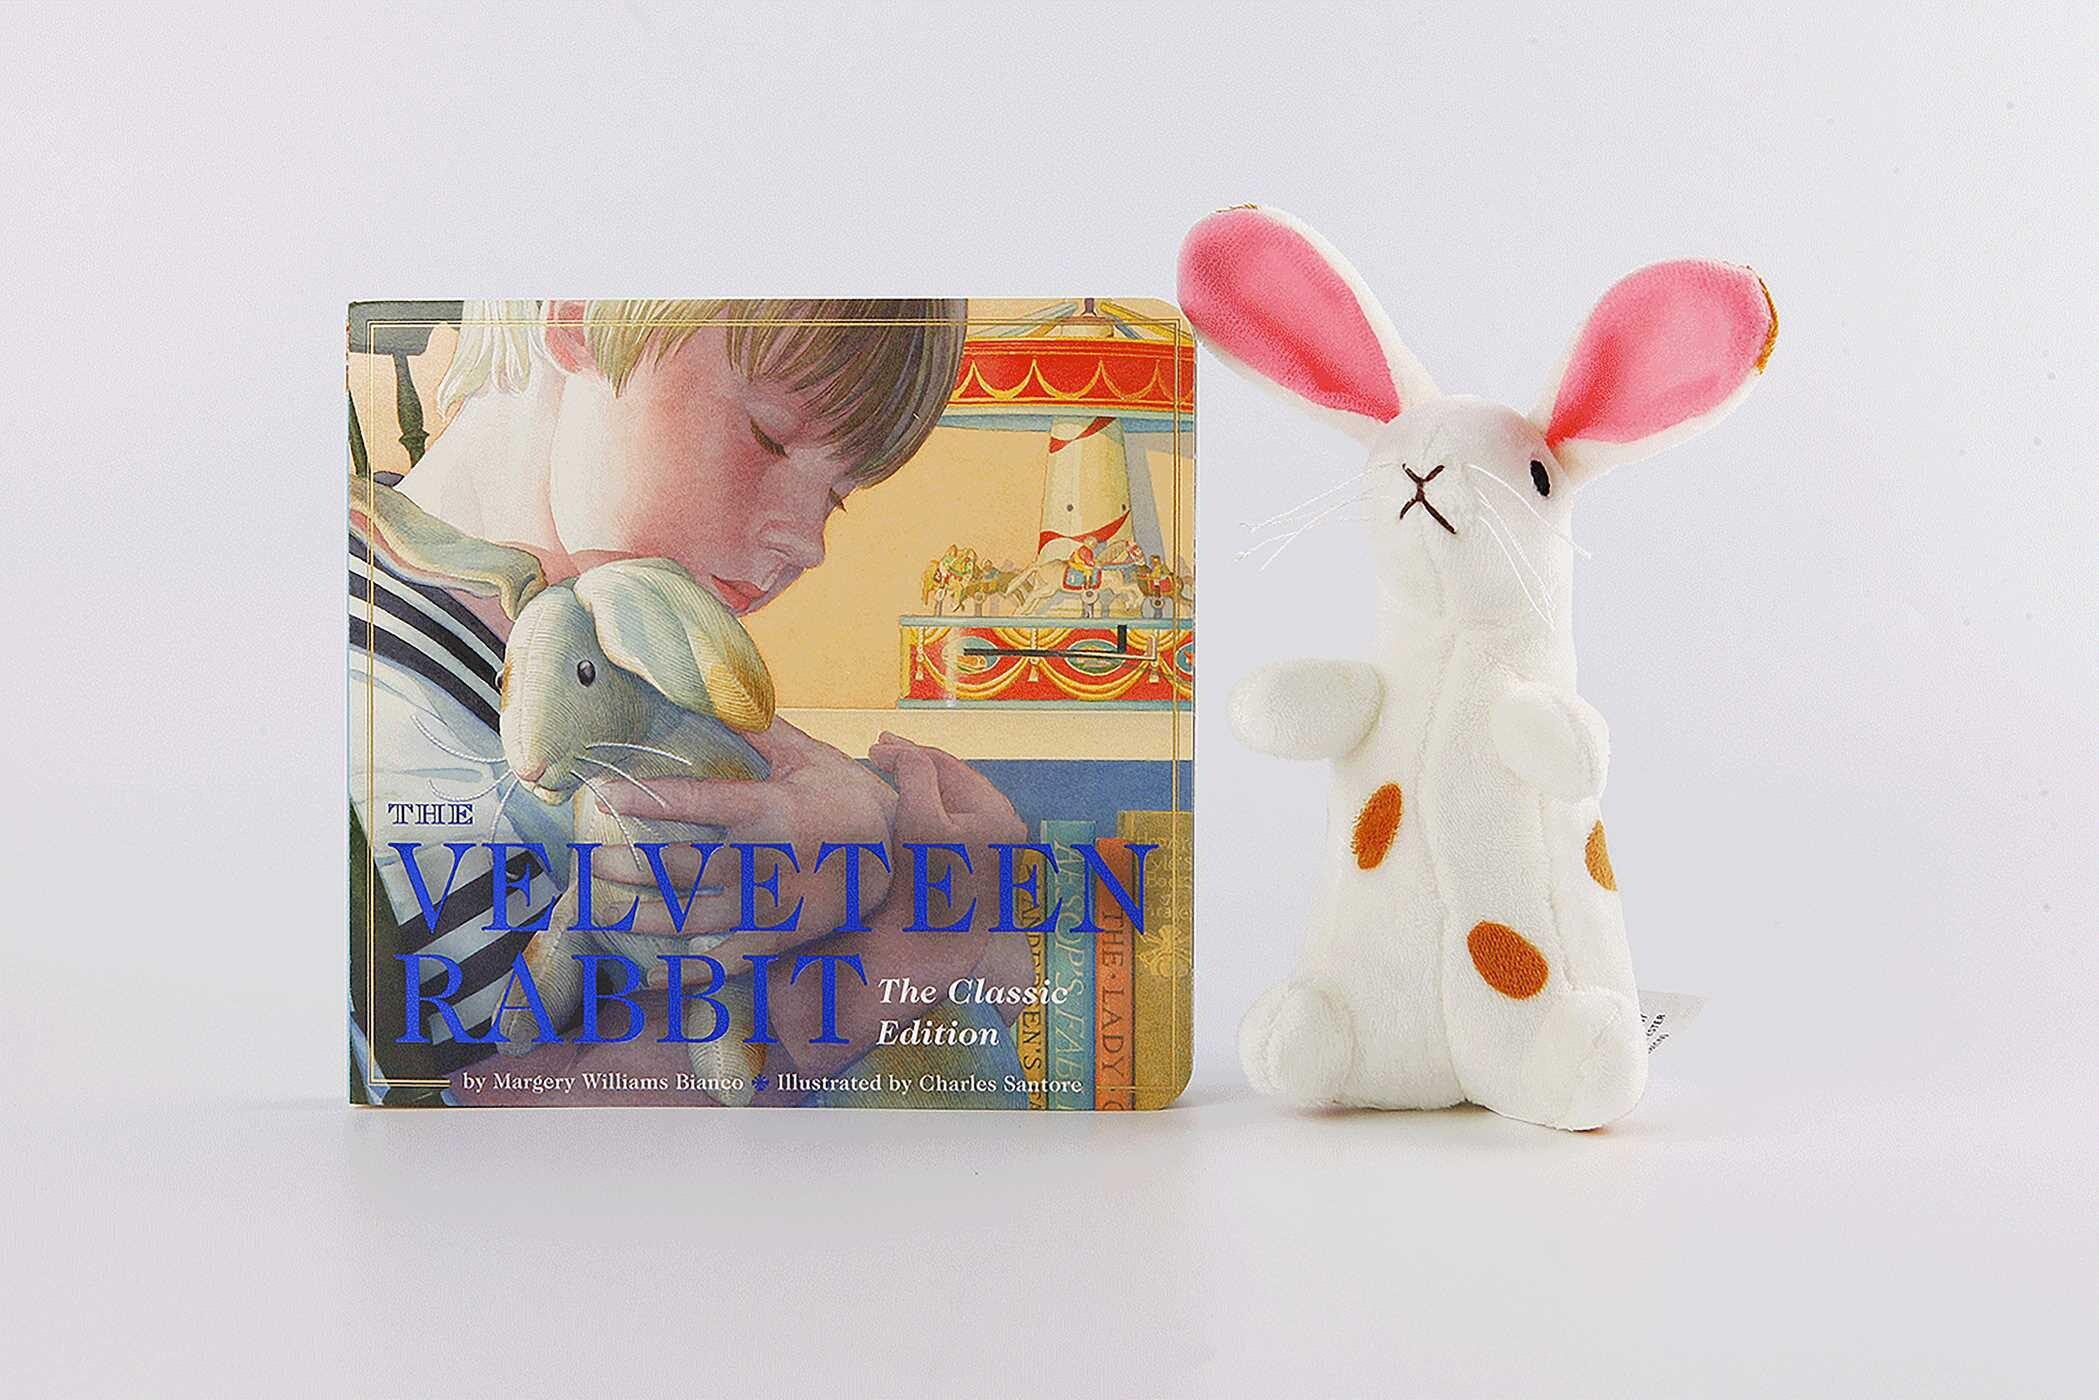 Jellycat - Bashful Kitty Stuffed Animal – The Velveteen Rabbit